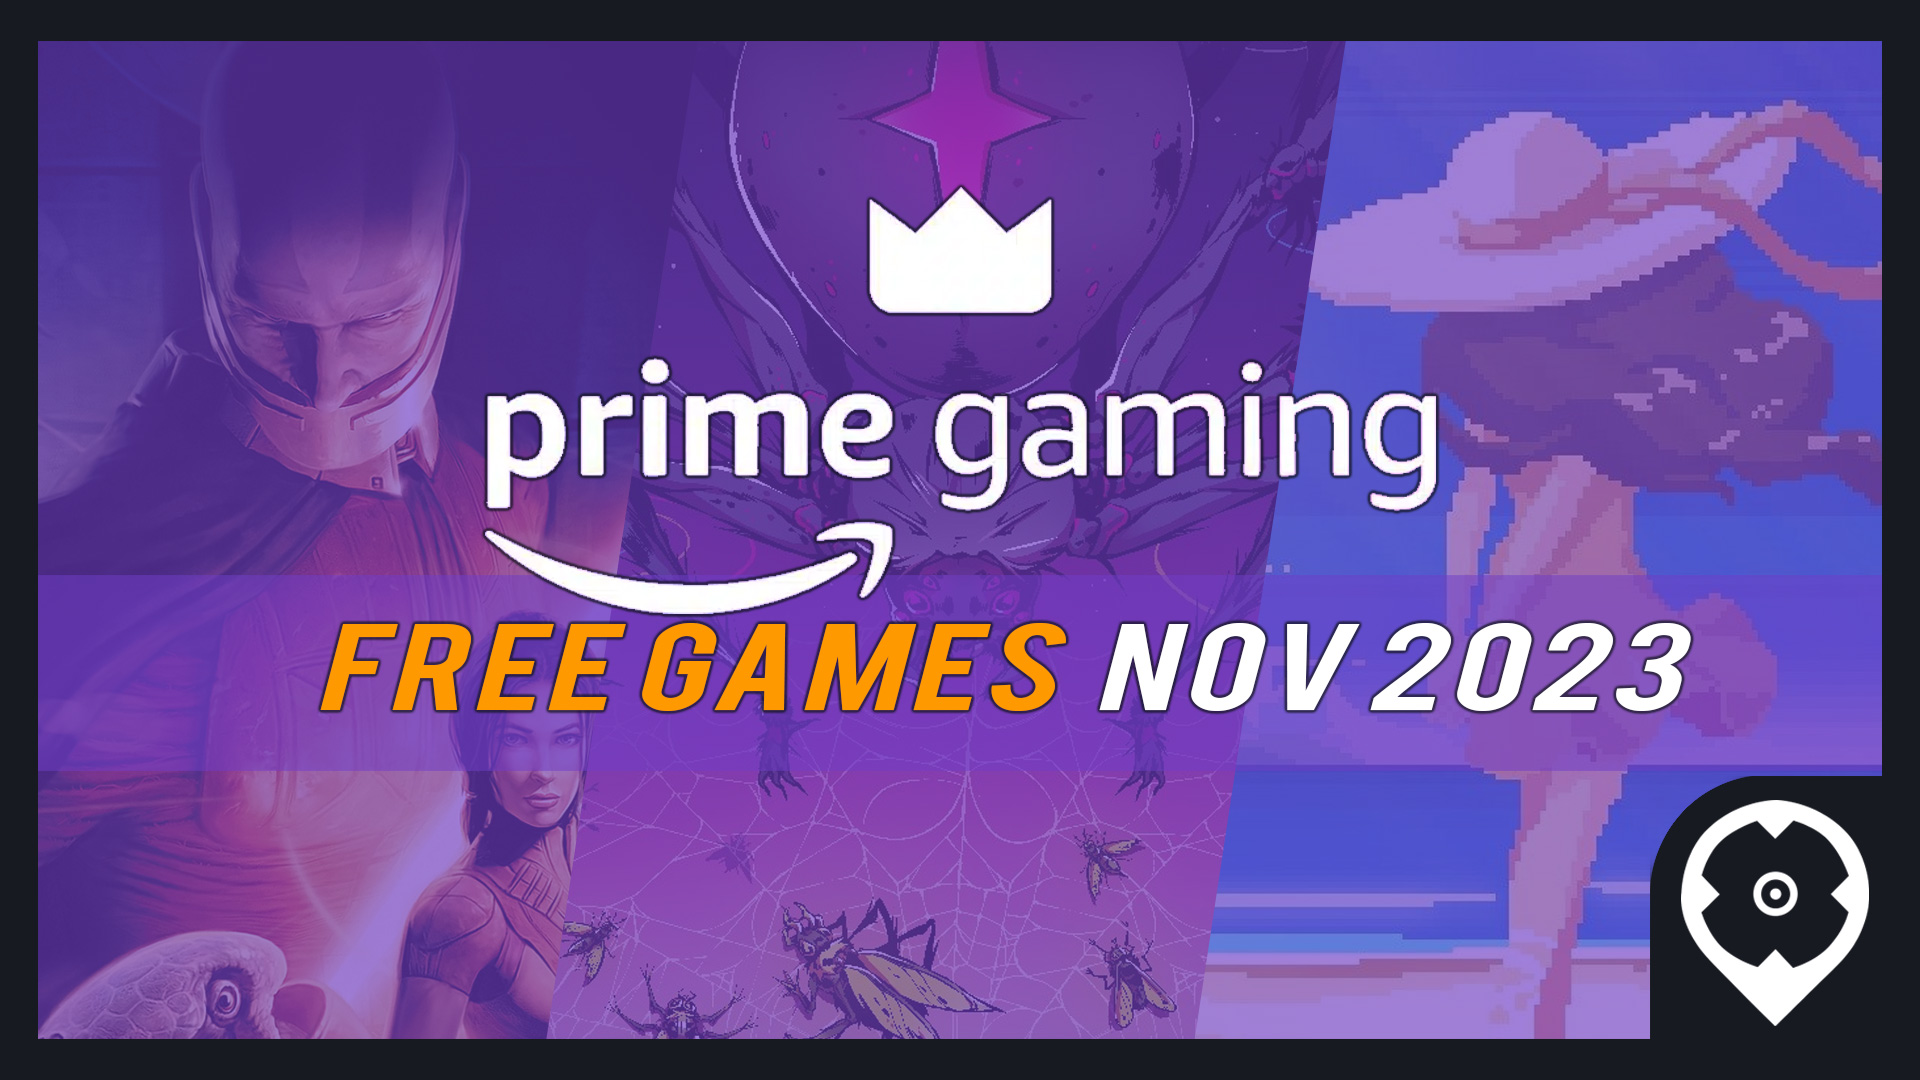 Prime Gaming Free Games for November 2023 - Full List